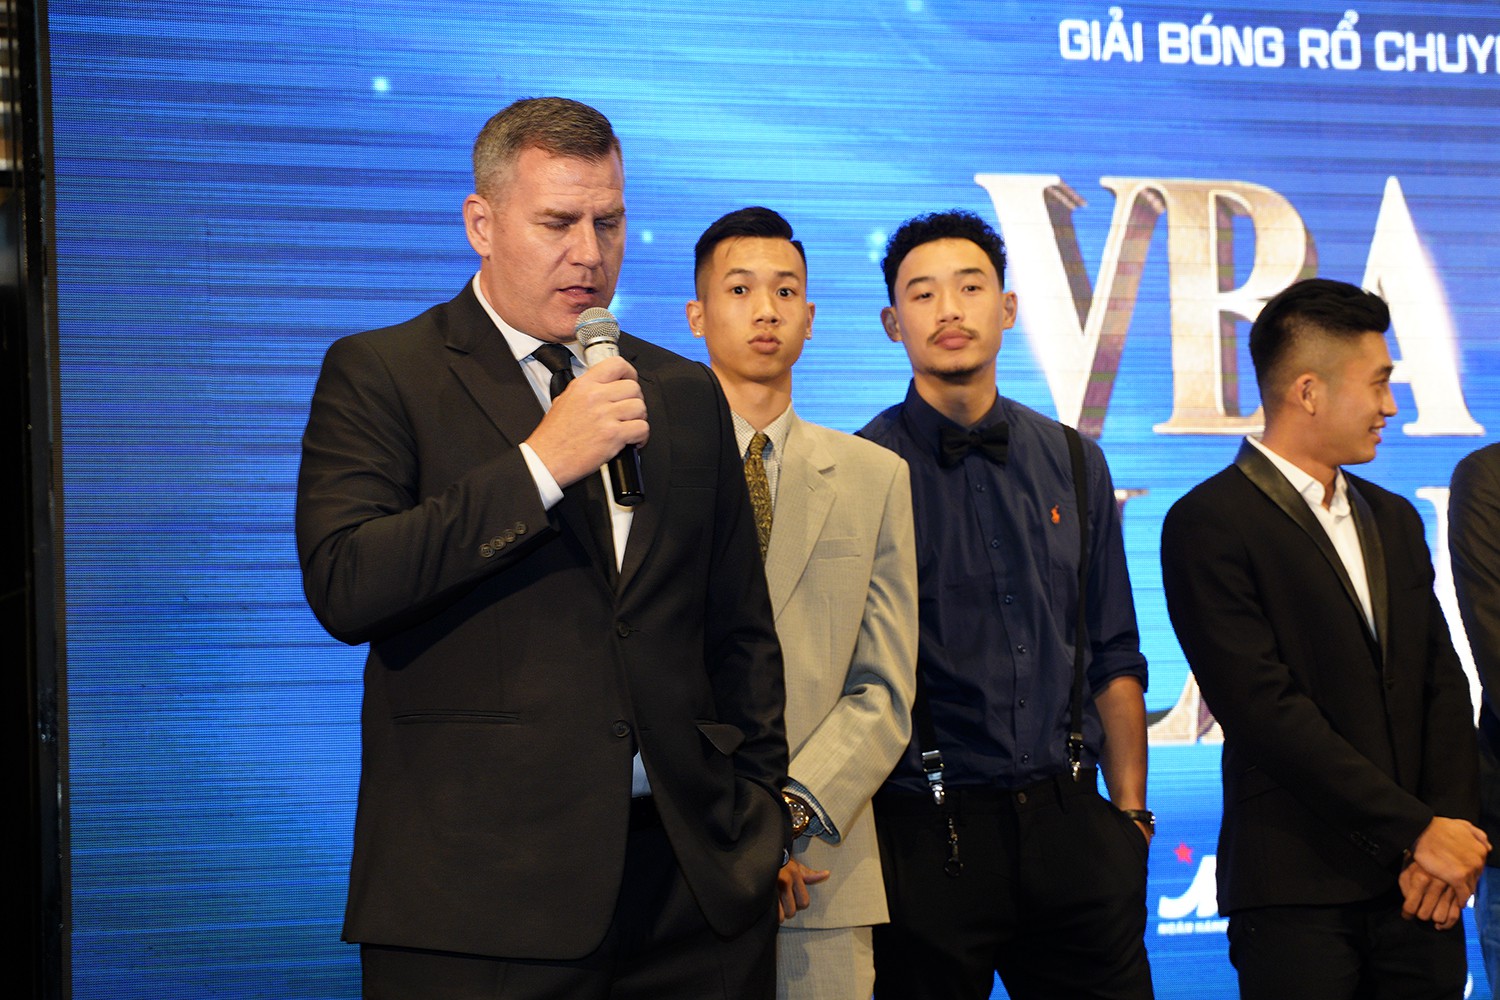 Bất ngờ chuyện HLV Kevin Yurkus cám ơn kình địch Thang Long Warriors khi Cantho Catfish được vinh danh tại VBA Awards 2018 - Ảnh 2.